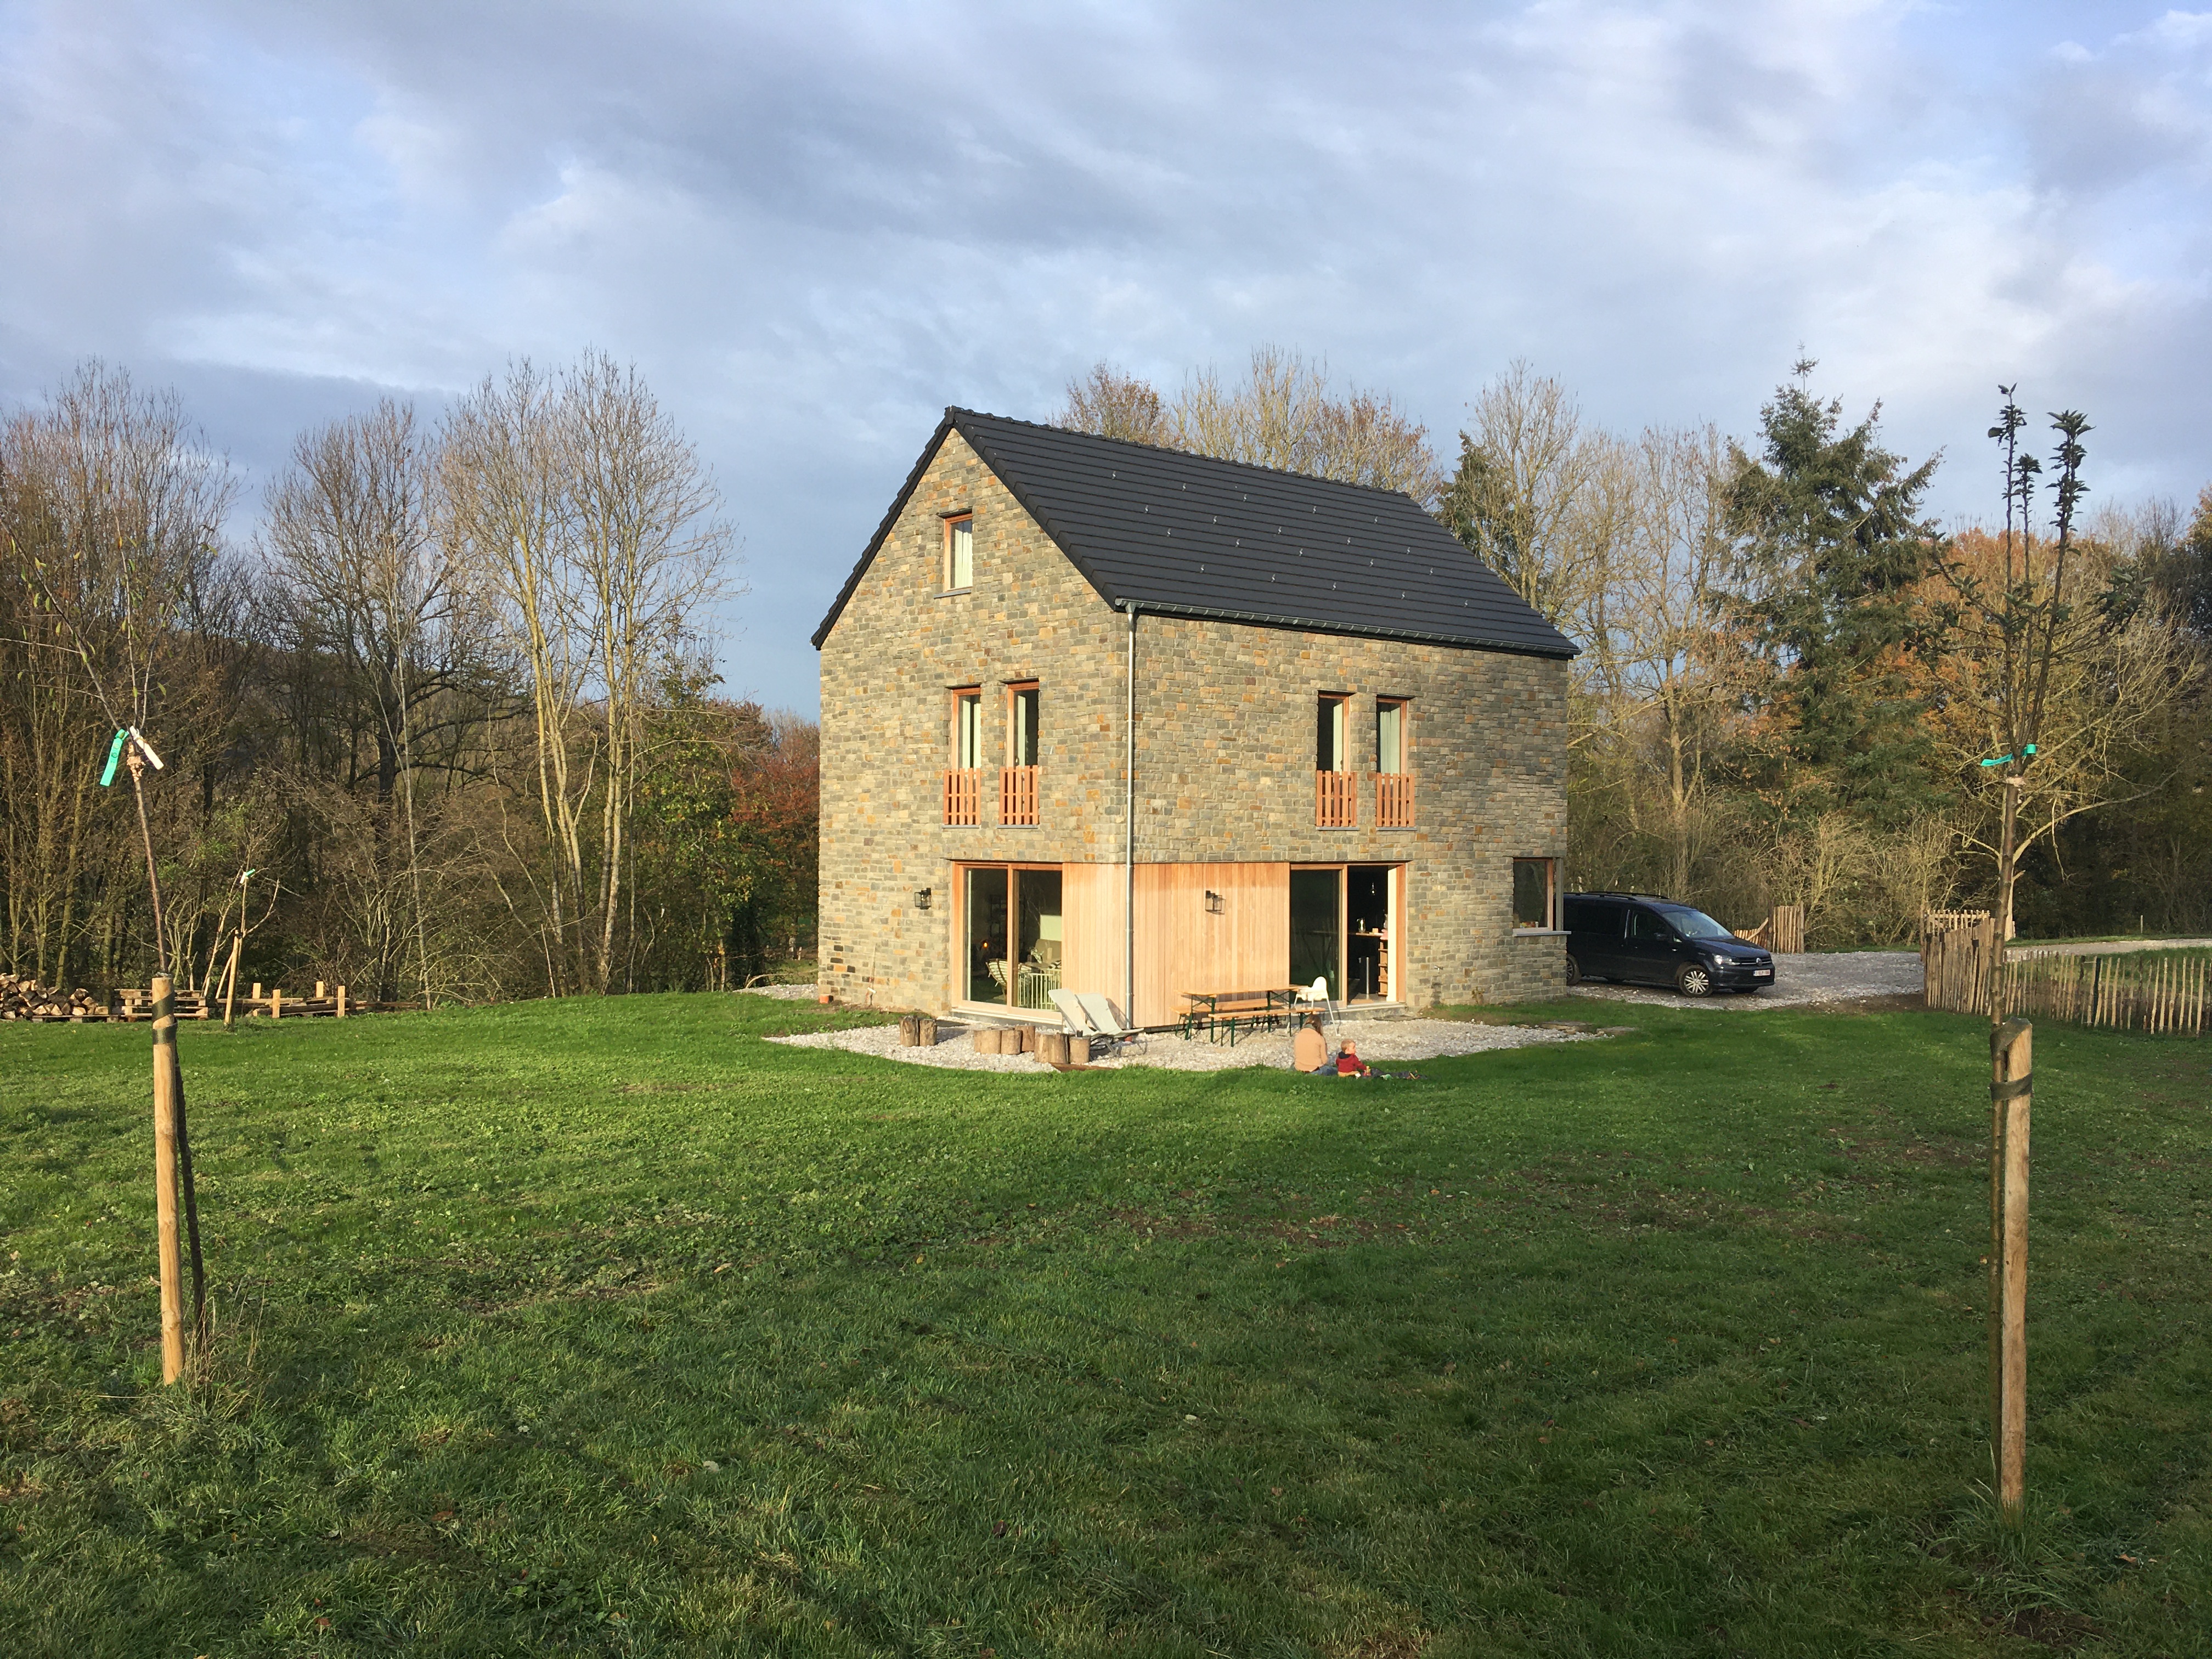 Meublé de vacances - maison écologique - 9 personnes - Hamoir - province de Liège - près de Durbuy 